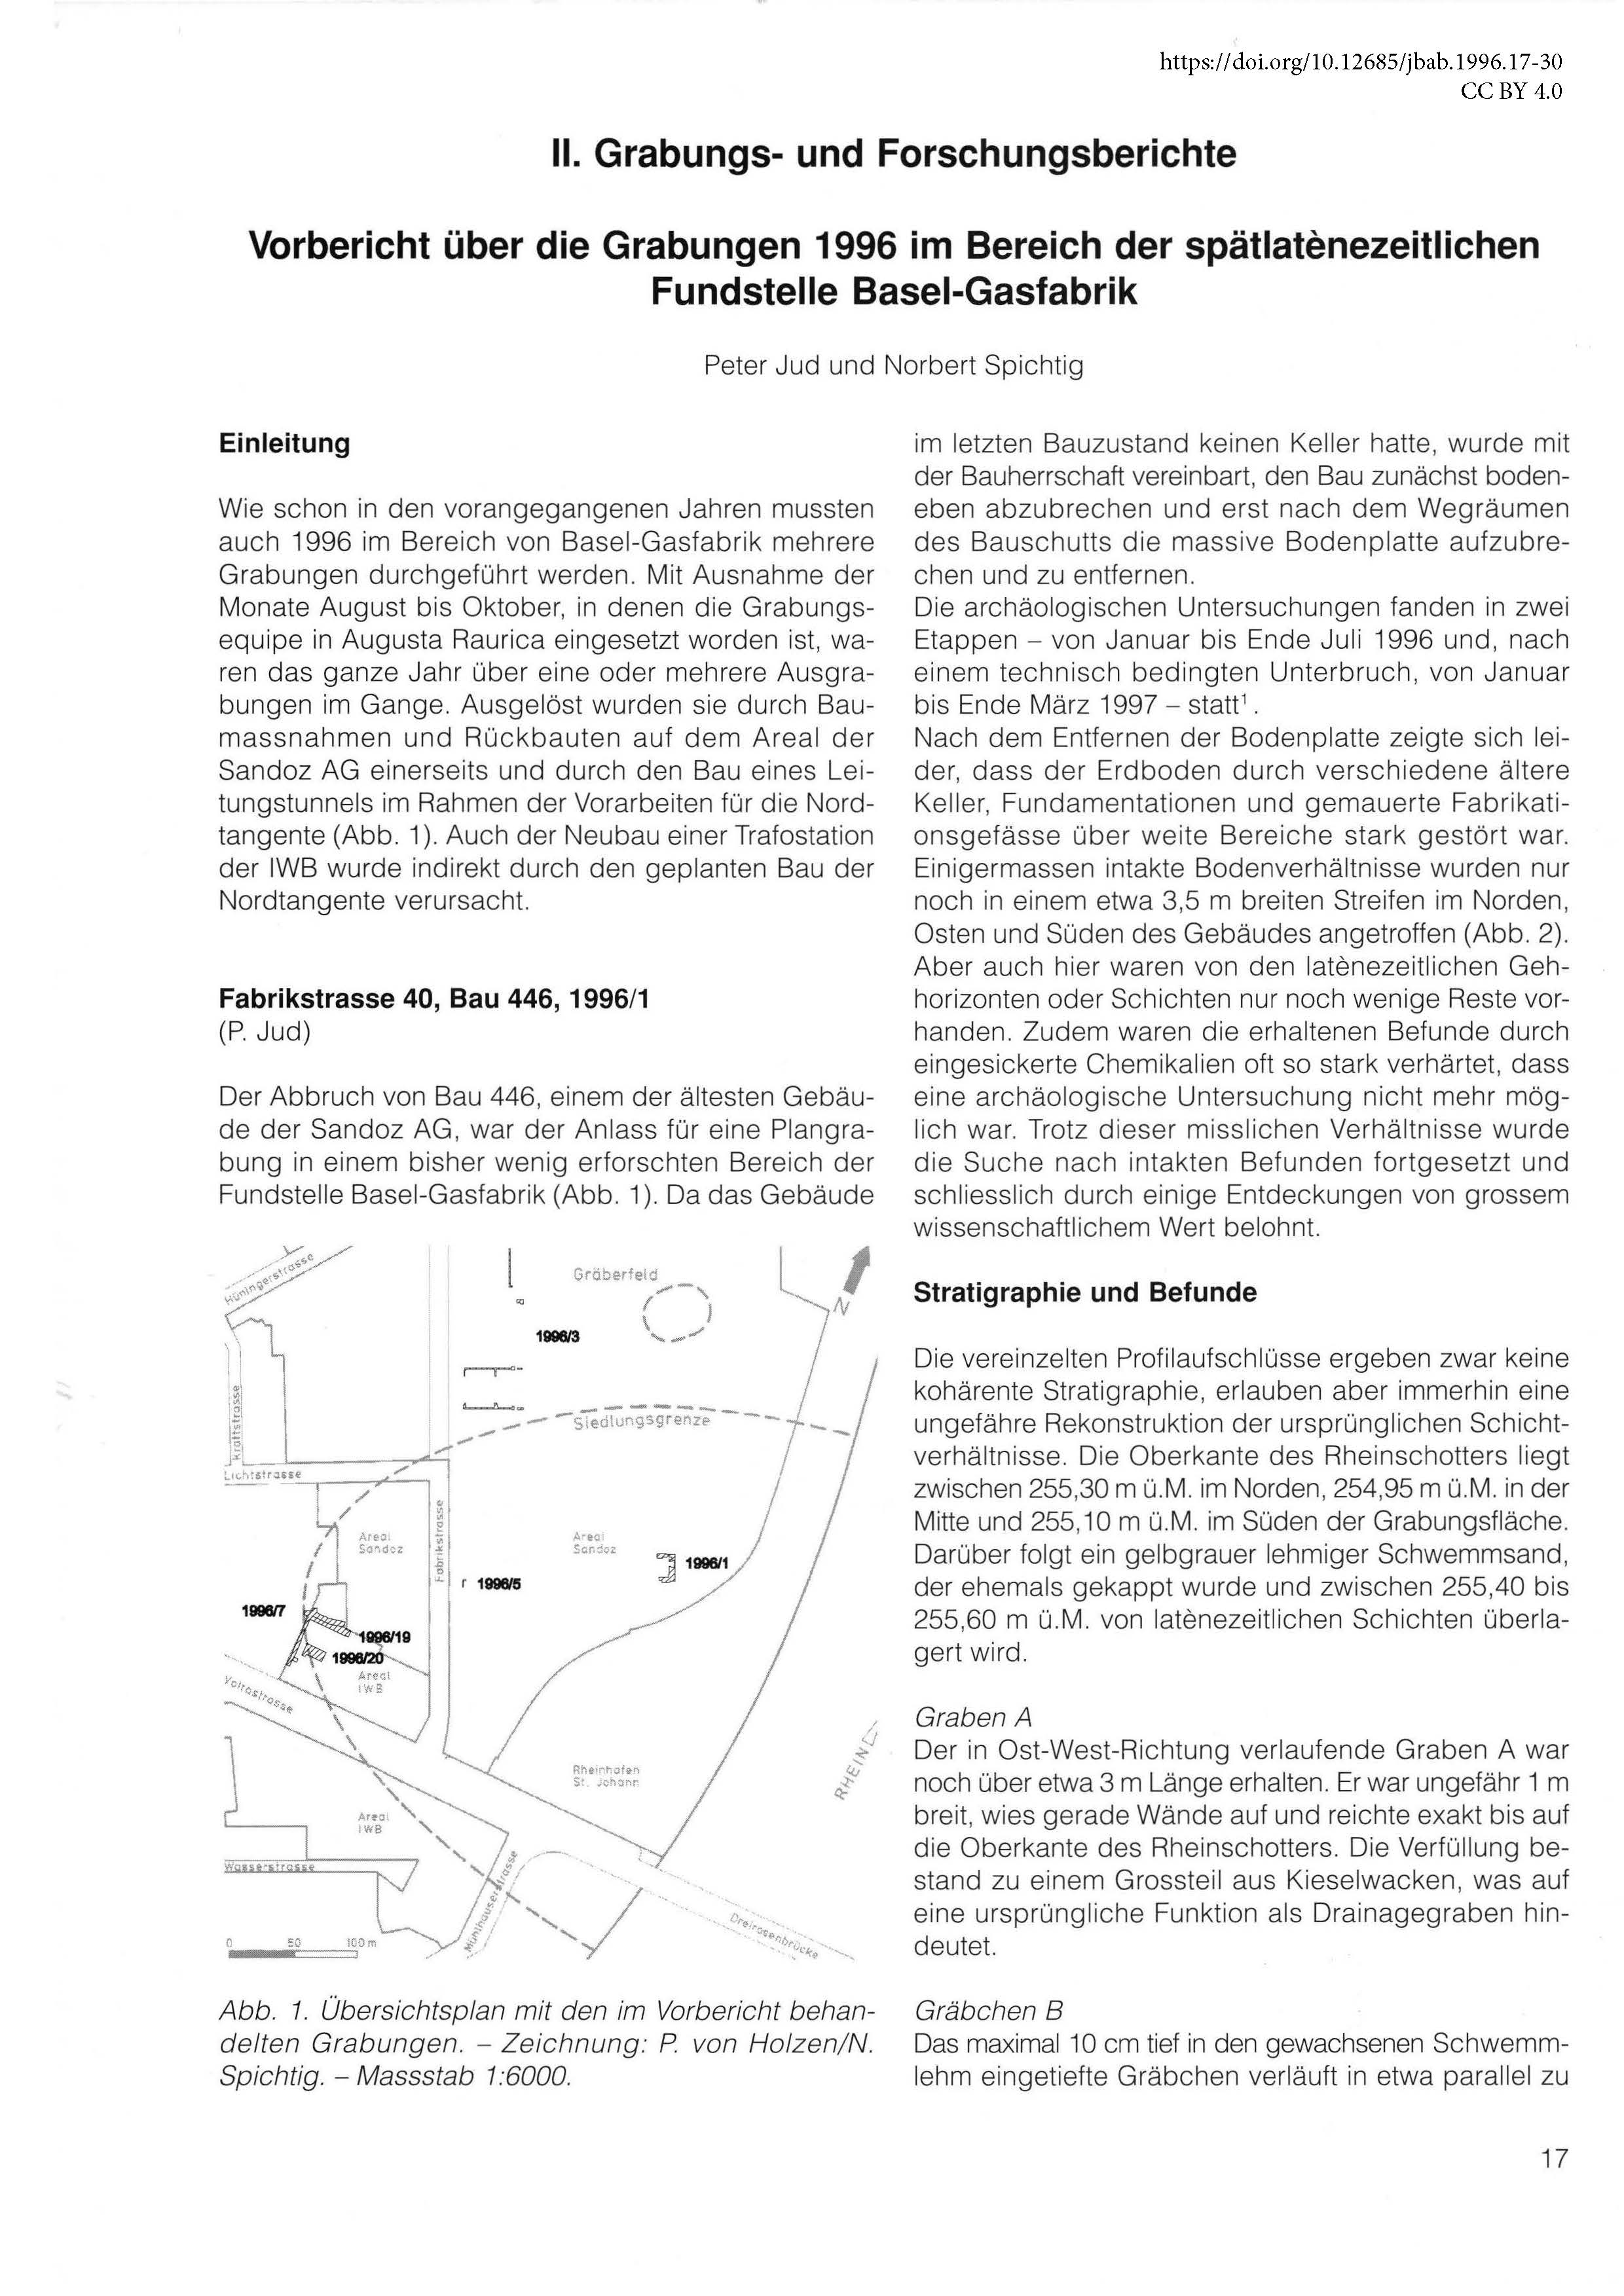 Erste Seite des Vorberichts zur Fundstelle Basel-Gasfabrik